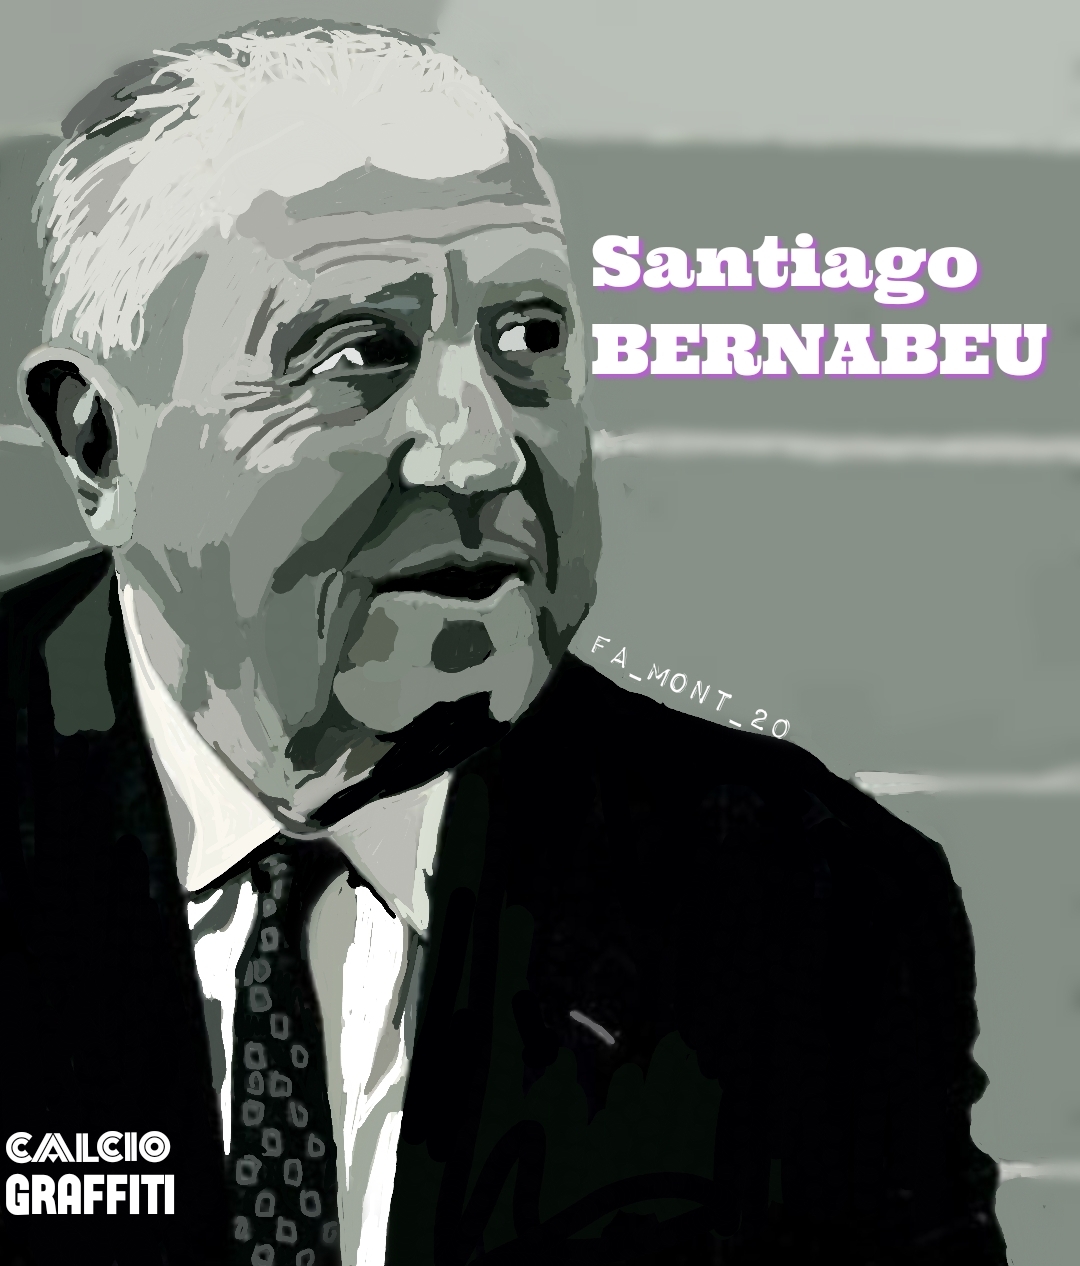 SANTIAGO BERNABEU